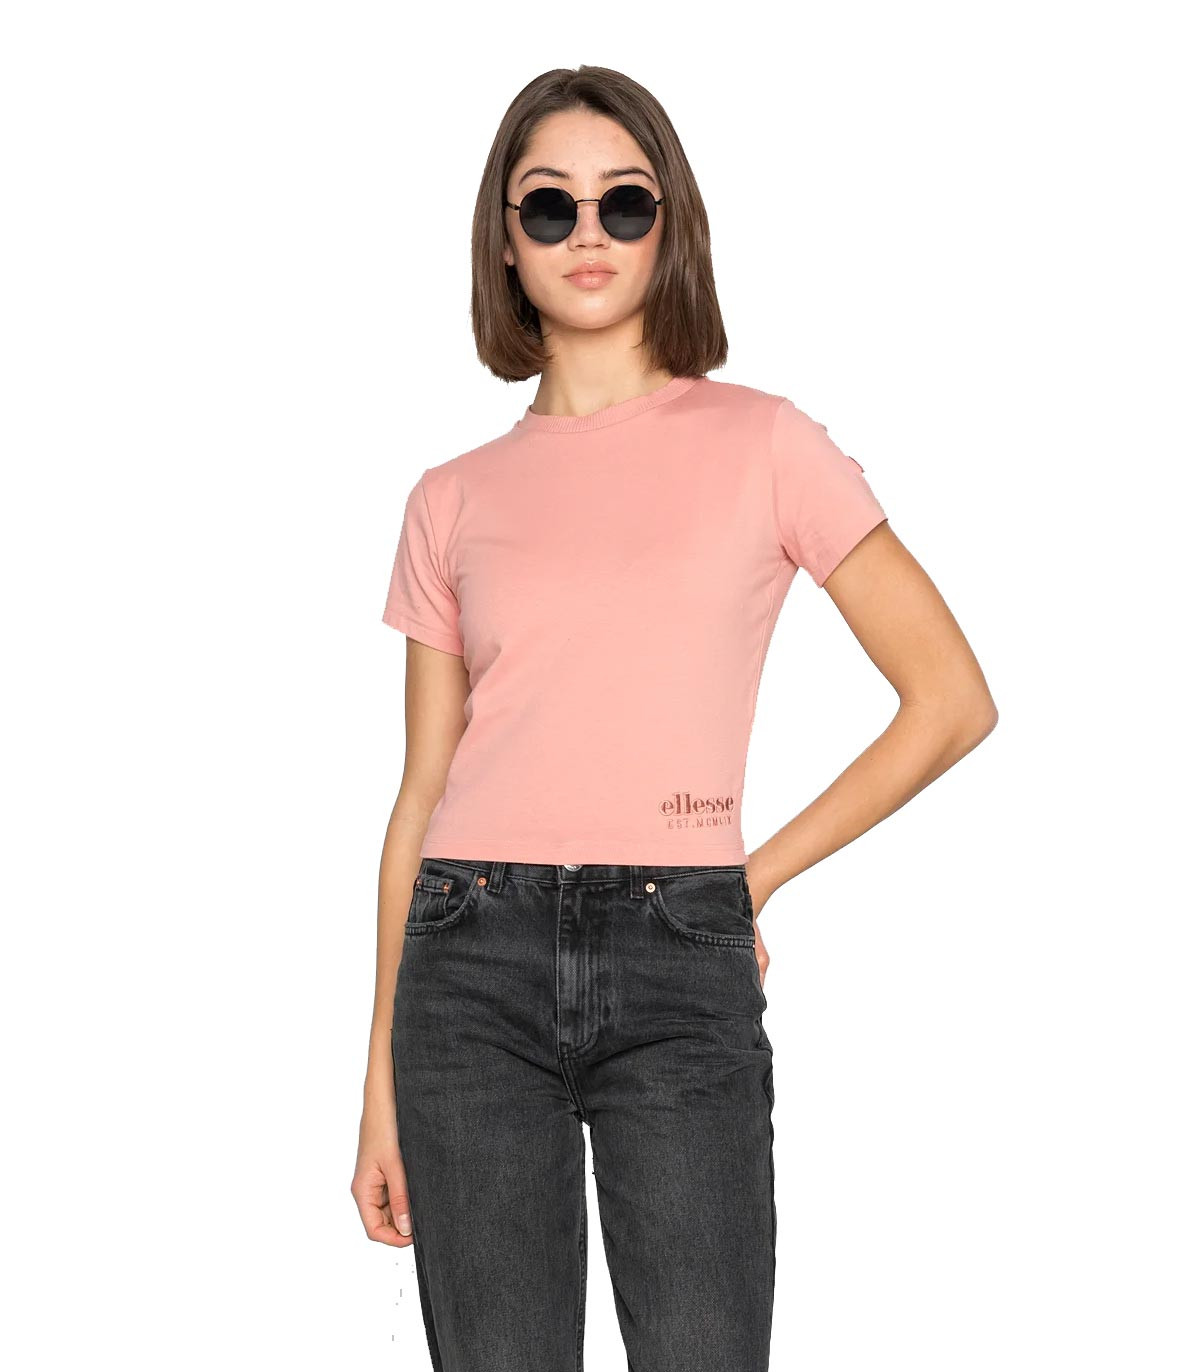 Ellesse - Camiseta Crop Dropper - Rosa